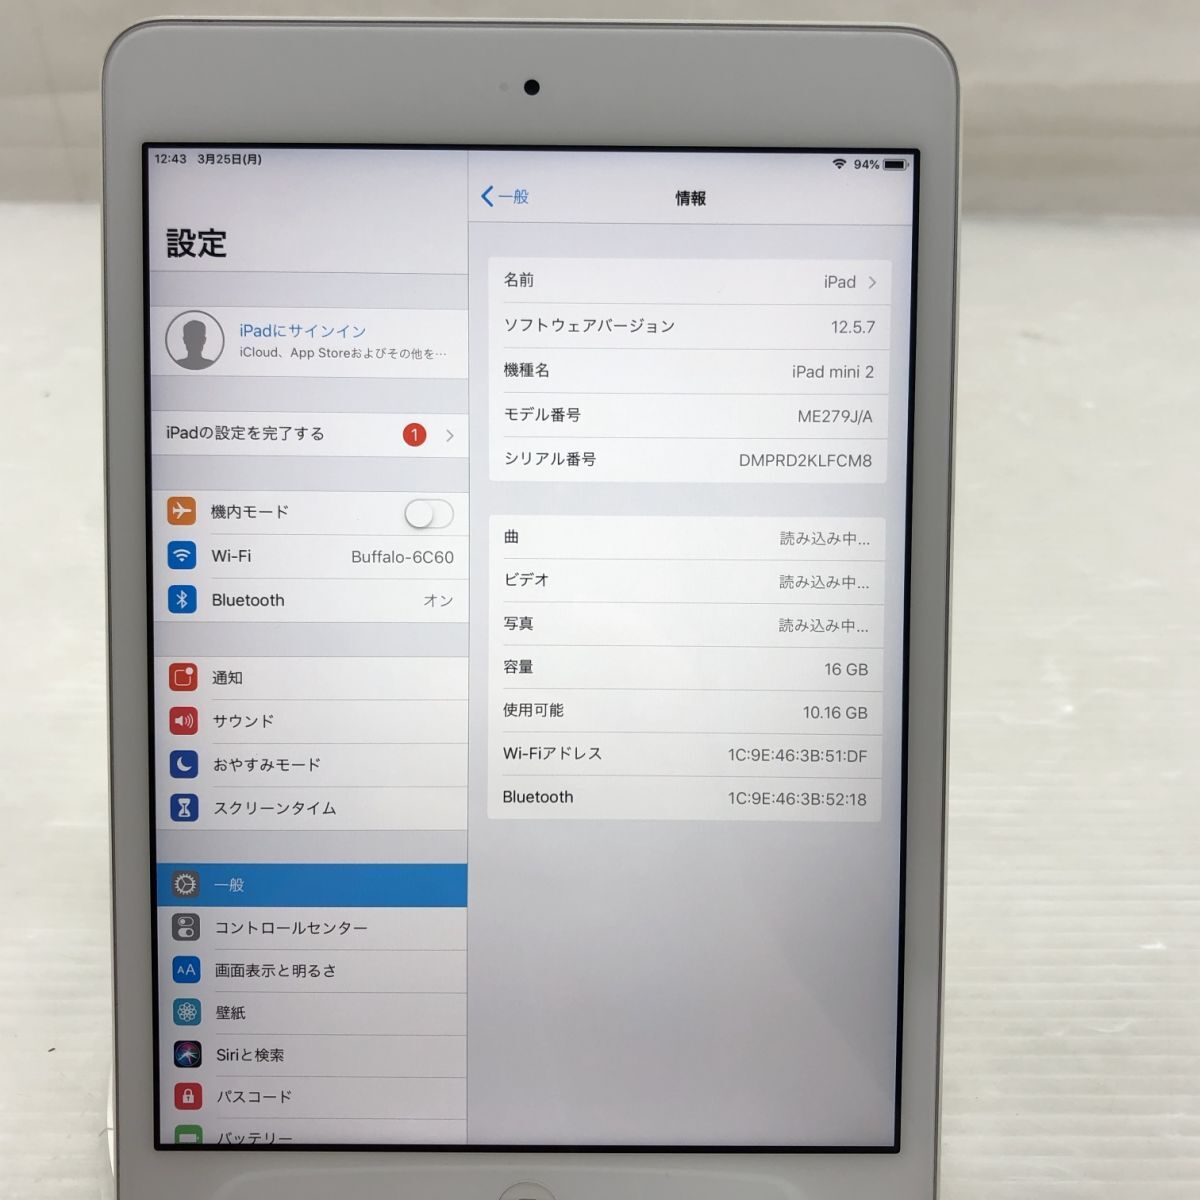 1 иен [ Junk ]Apple iPad mini 2 ME279J/A A1489 T011285[ перевод есть ]